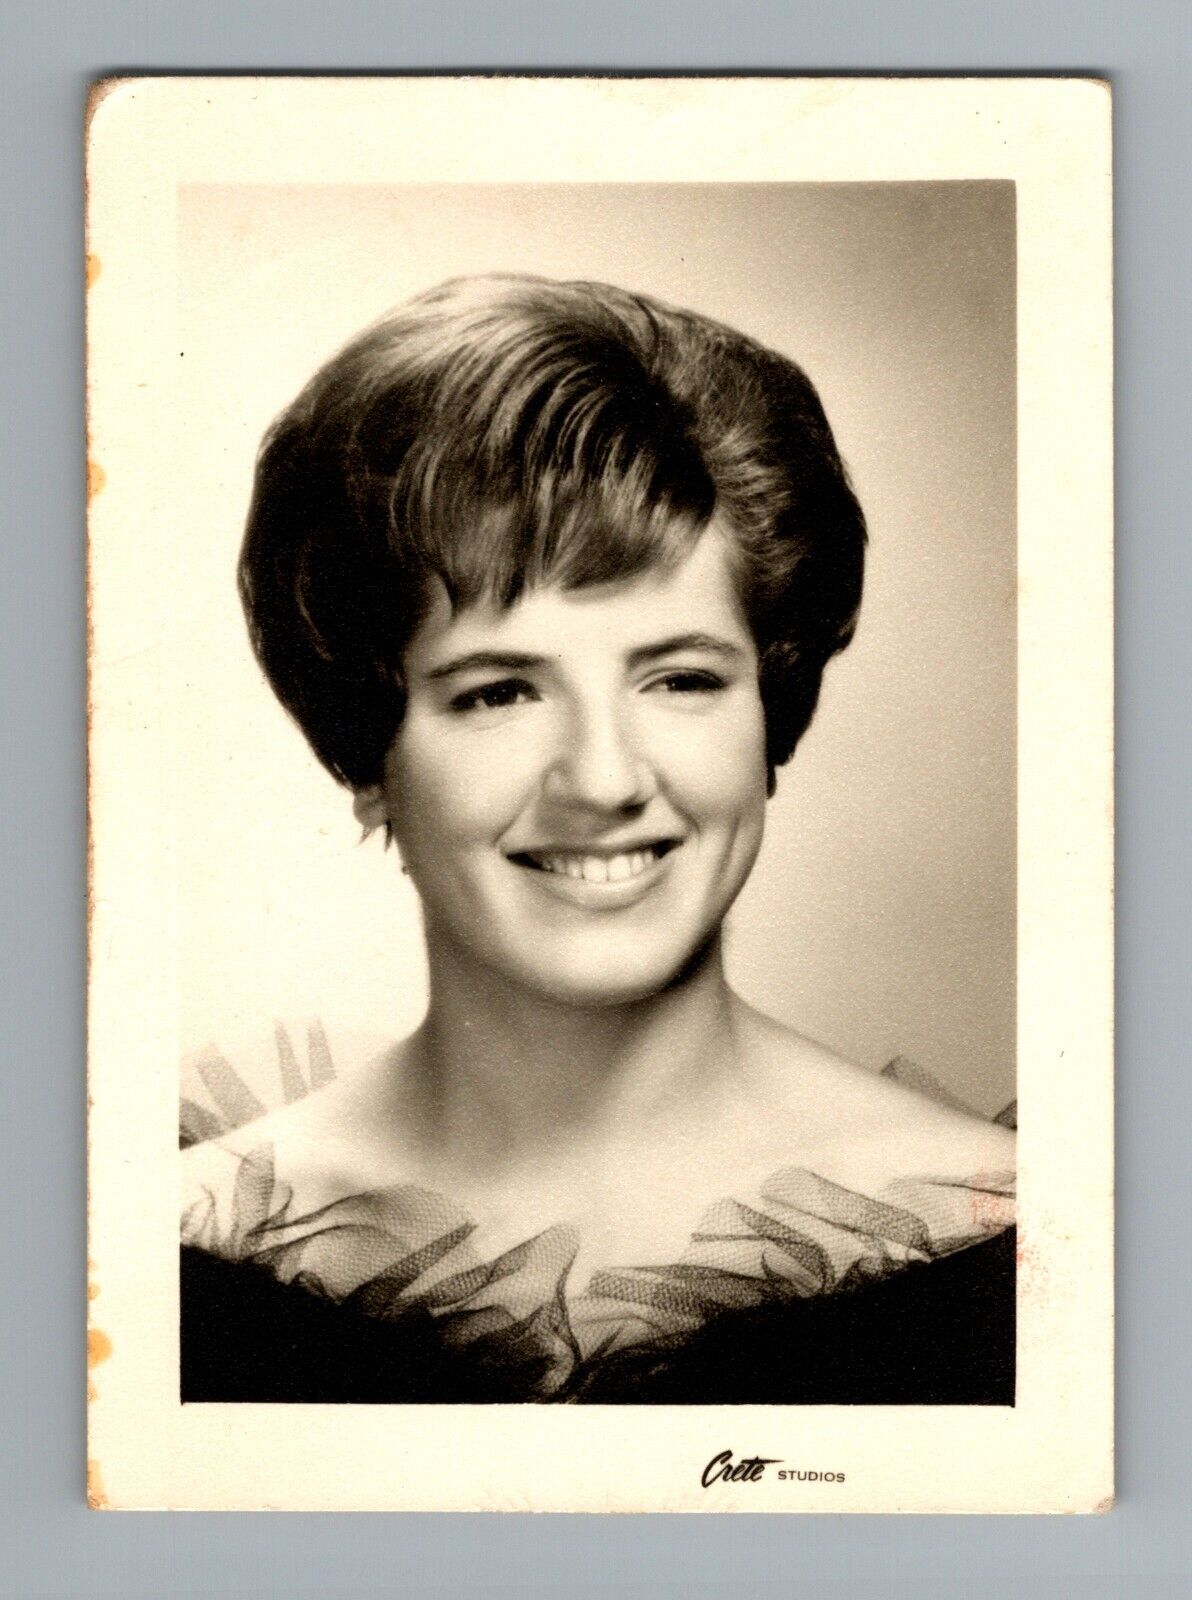 Vintage 1960s Woman Smiling Portrait Crete Studios B&W 2.5x3.5